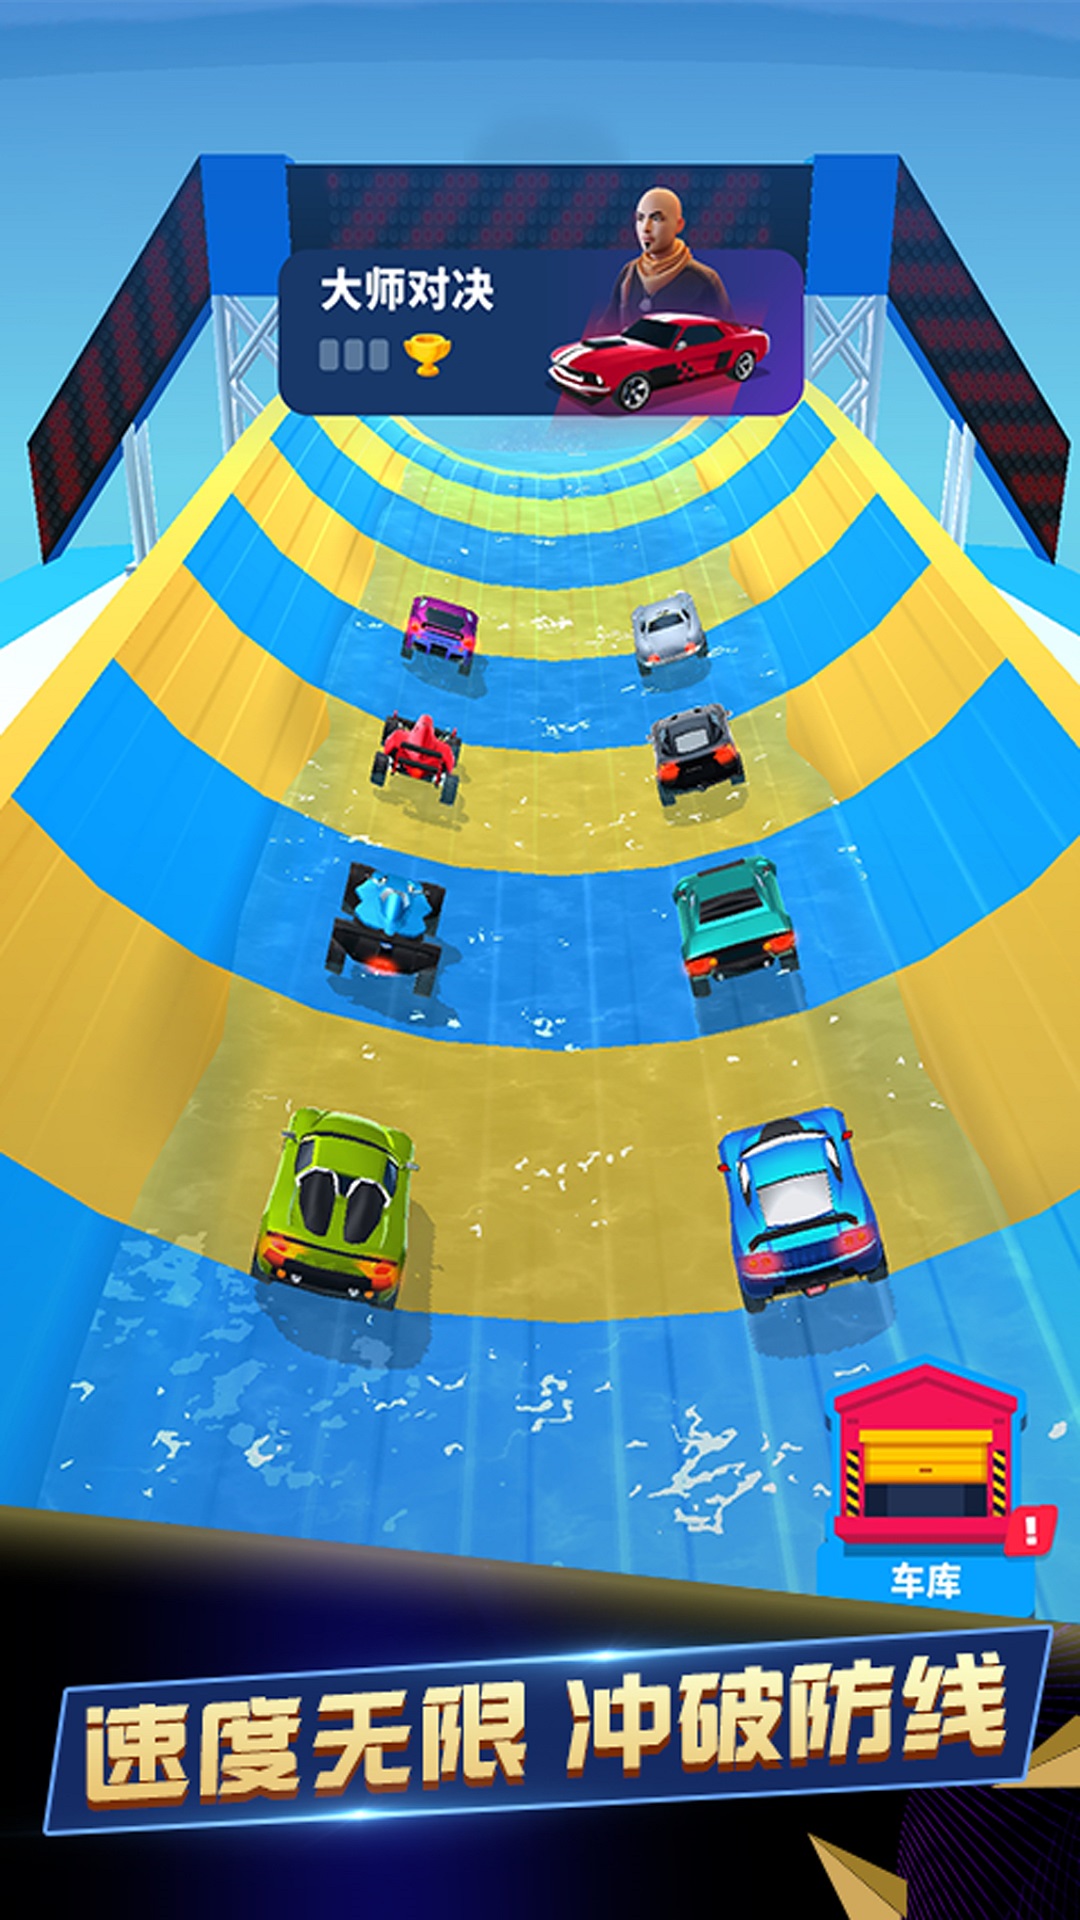 王牌急速赛车游戏下载安装图片1